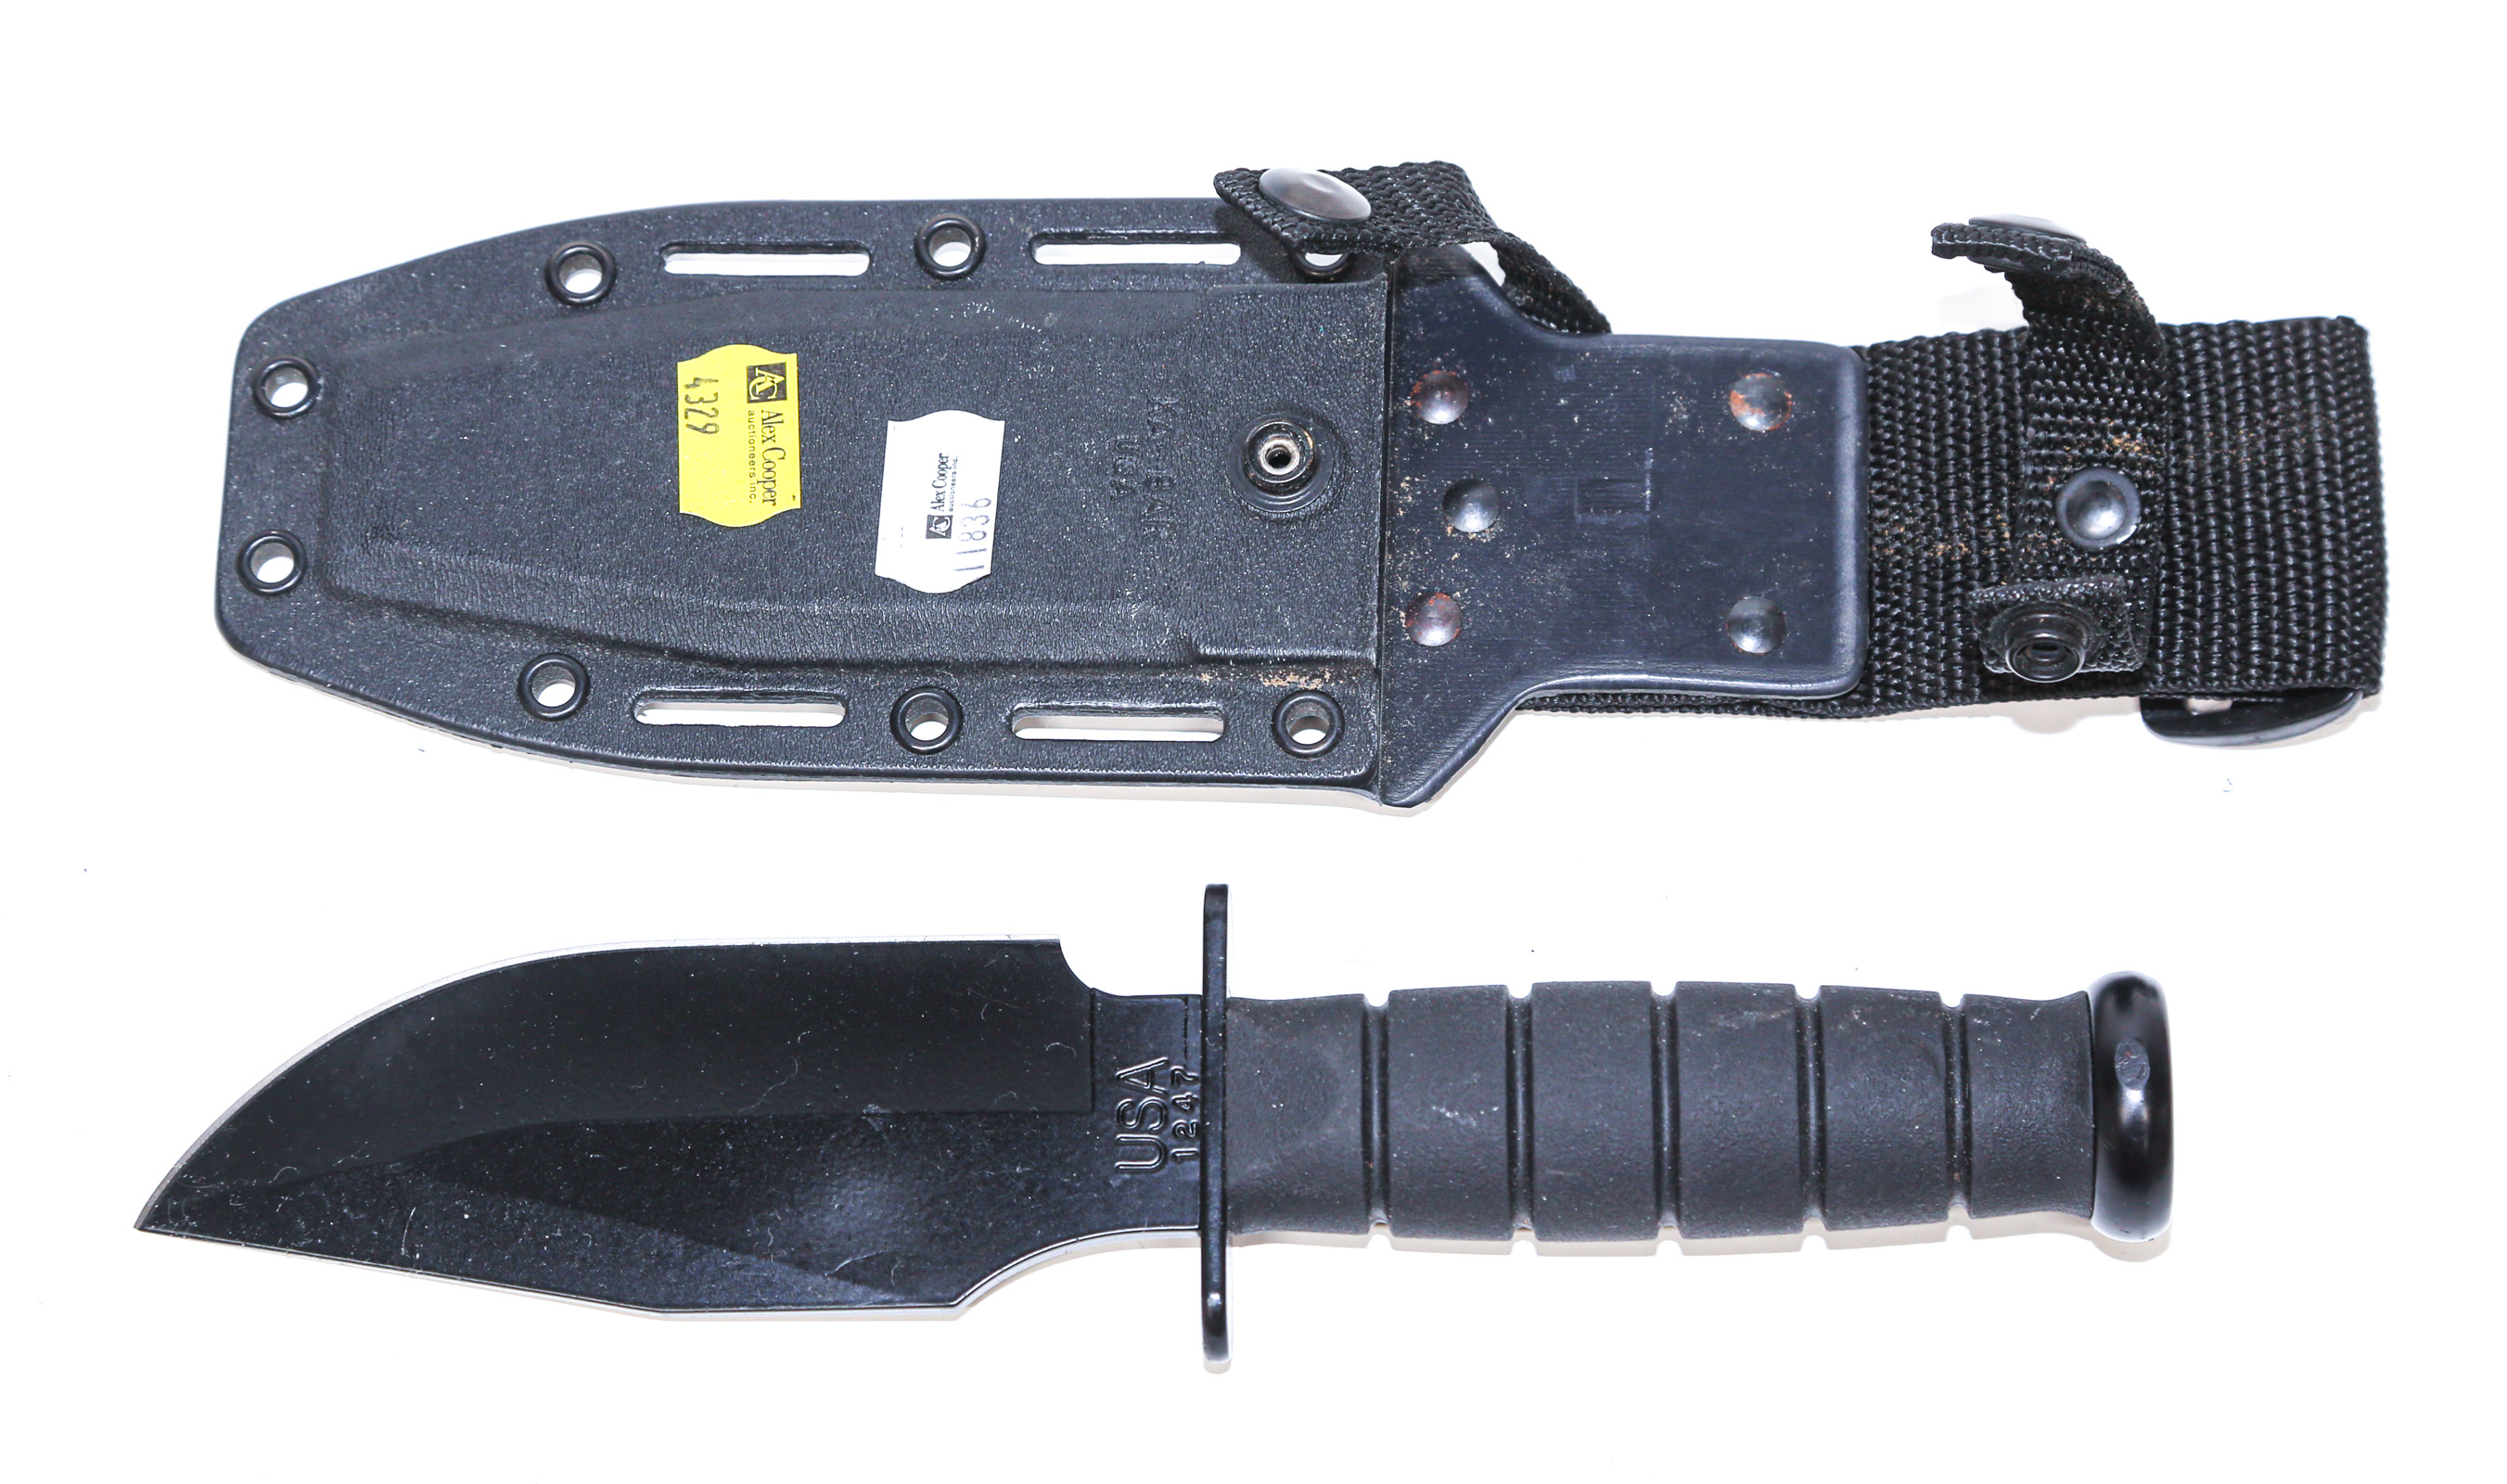 KA-BAR 1247 FIXED BLADE KNIFE With sheath.